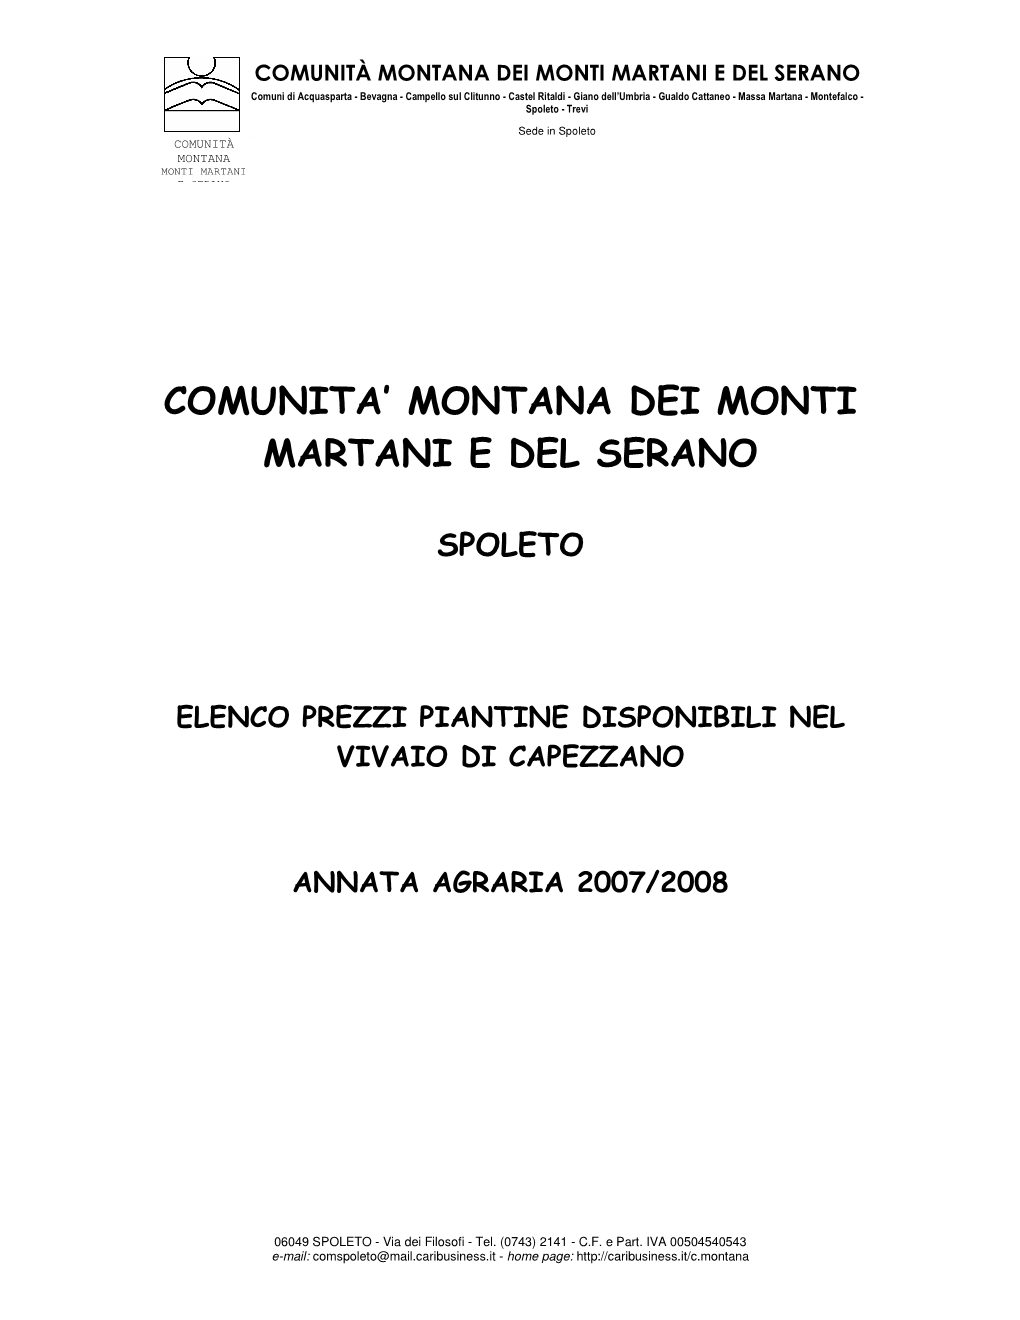 Comunita' Montana Dei Monti Martani E Del Serano